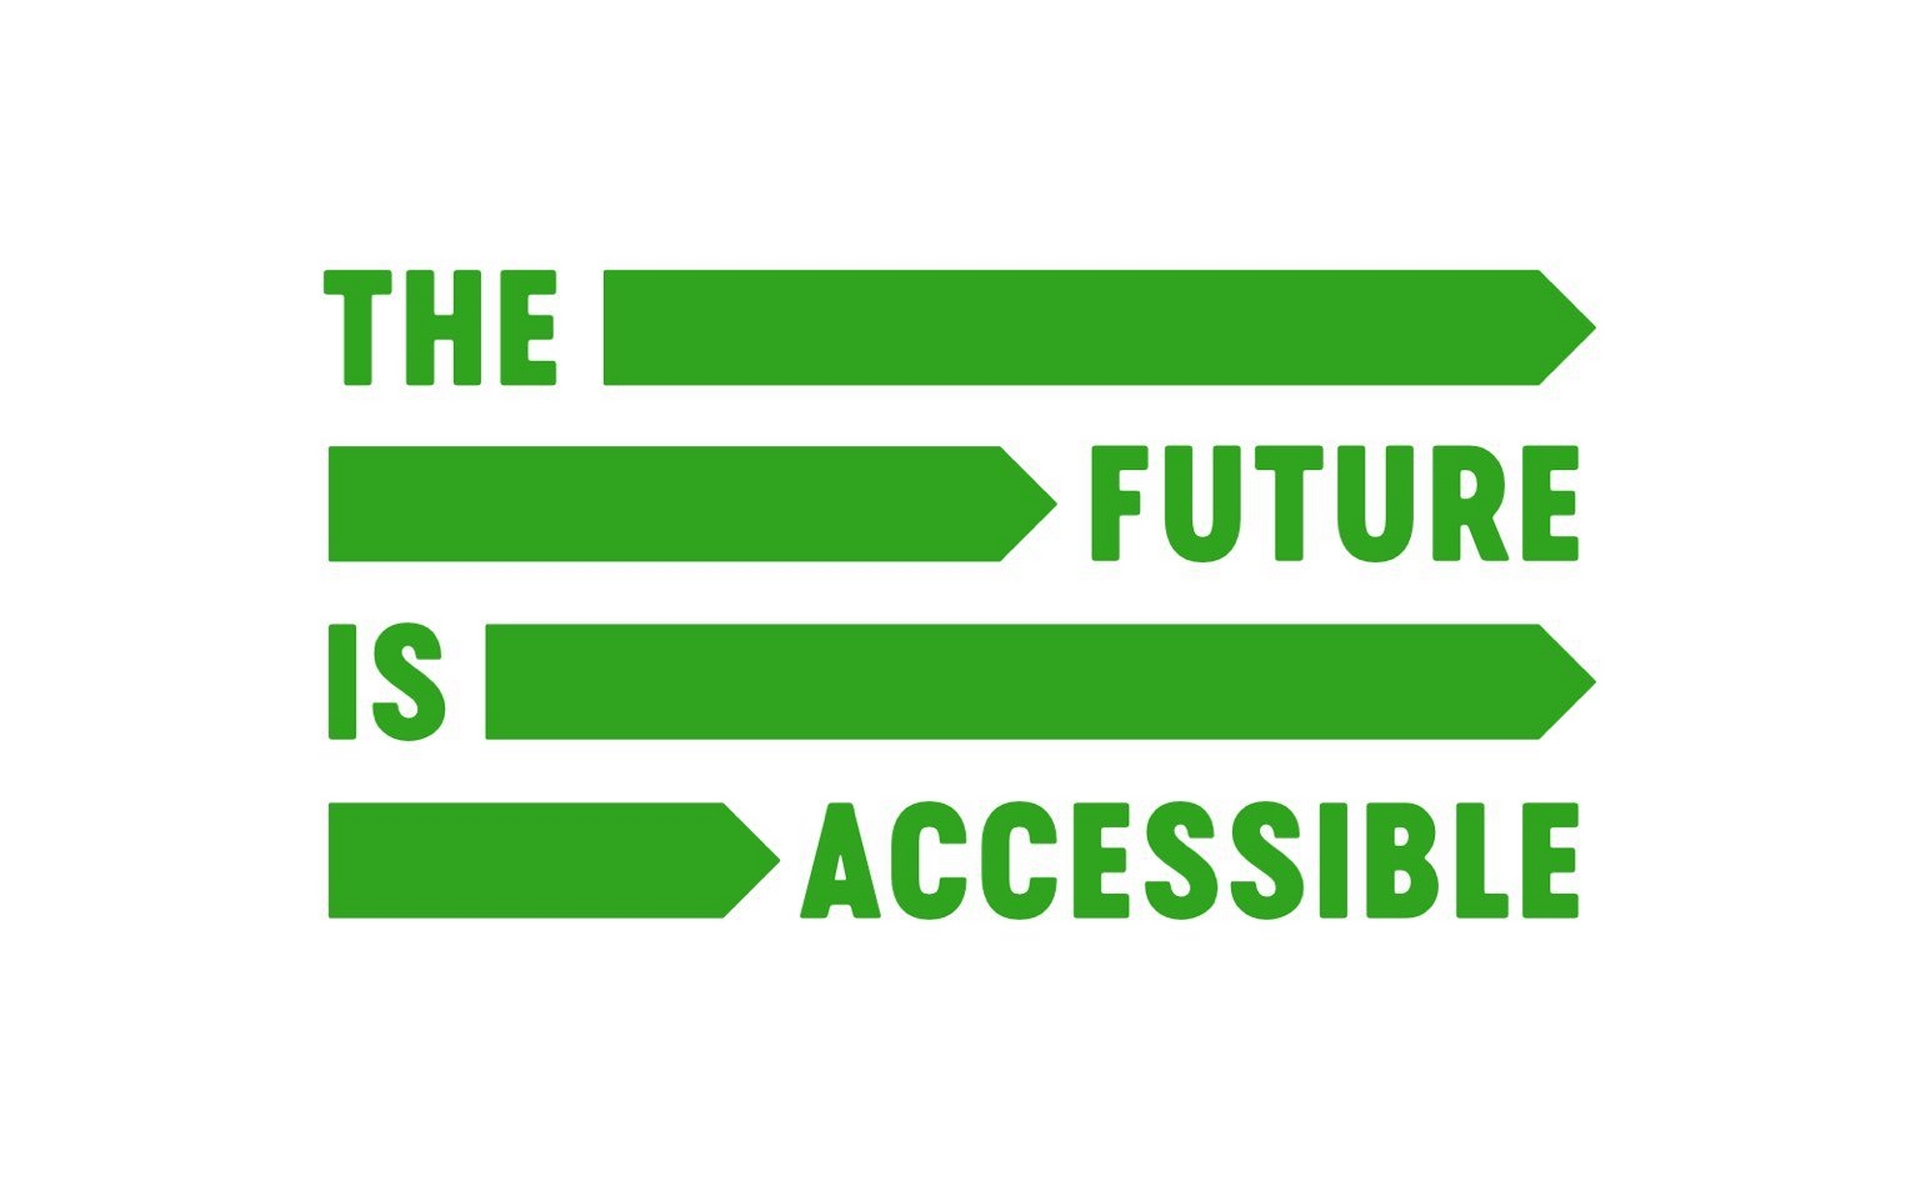 In giftgrüner Schrift ist zu lesen "the future is accessible" - jedes Wort in einer eigenen Zeile. Nach dem "the" und nach dem "is" füllen lange Pfeile den Rest der Zeile.